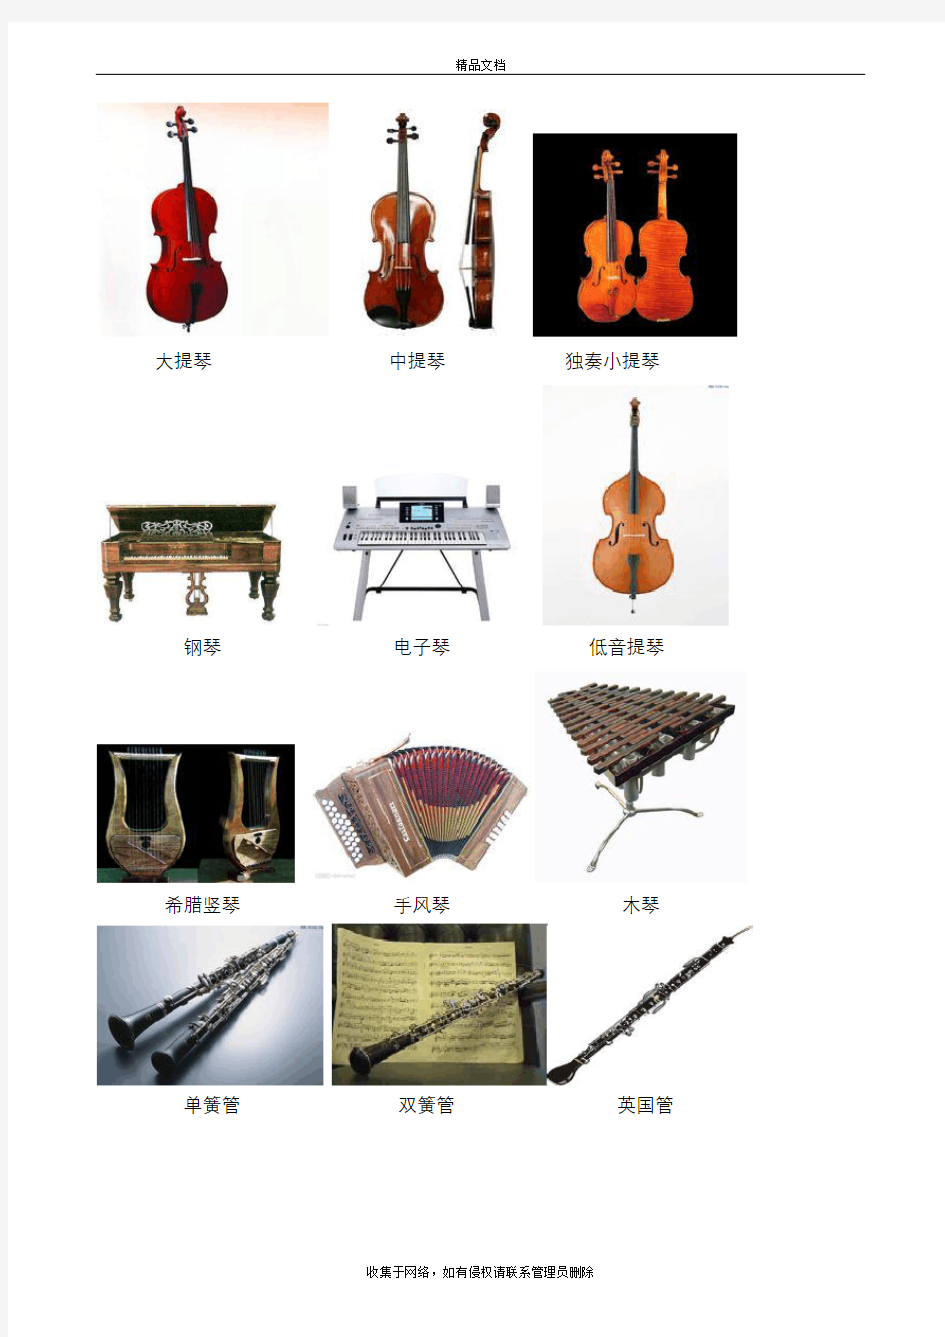 常见乐器名称+乐器图片教学内容